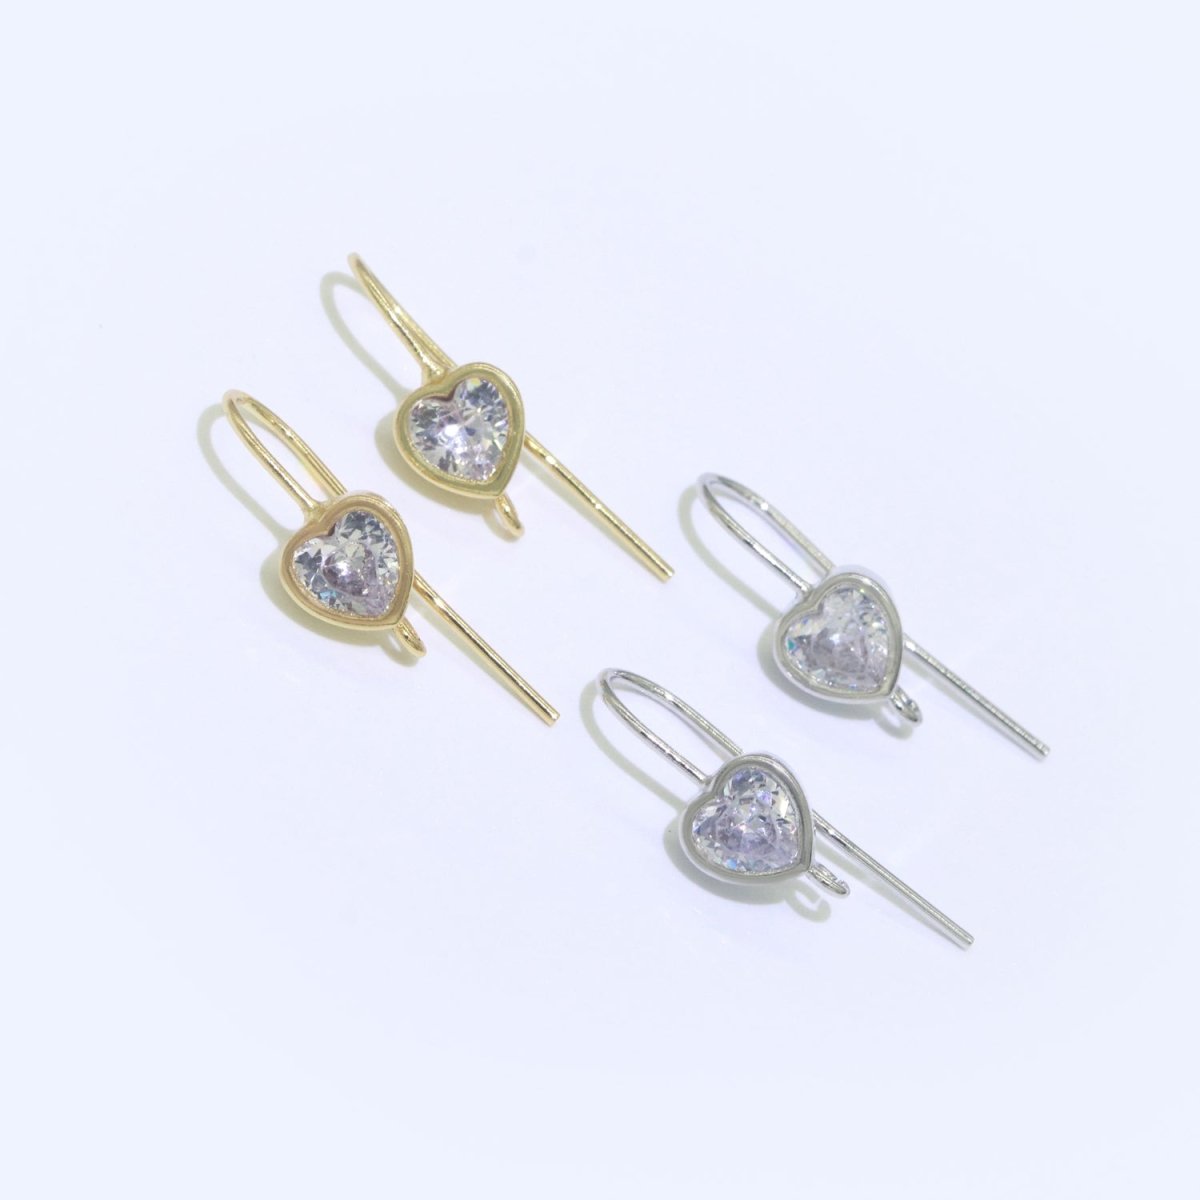 Open Link French Hook Earrings in Gold, Fish Hook Earring Heart CZ Earring Minimalist Jewelry Making Supply L-494 L-495 - DLUXCA